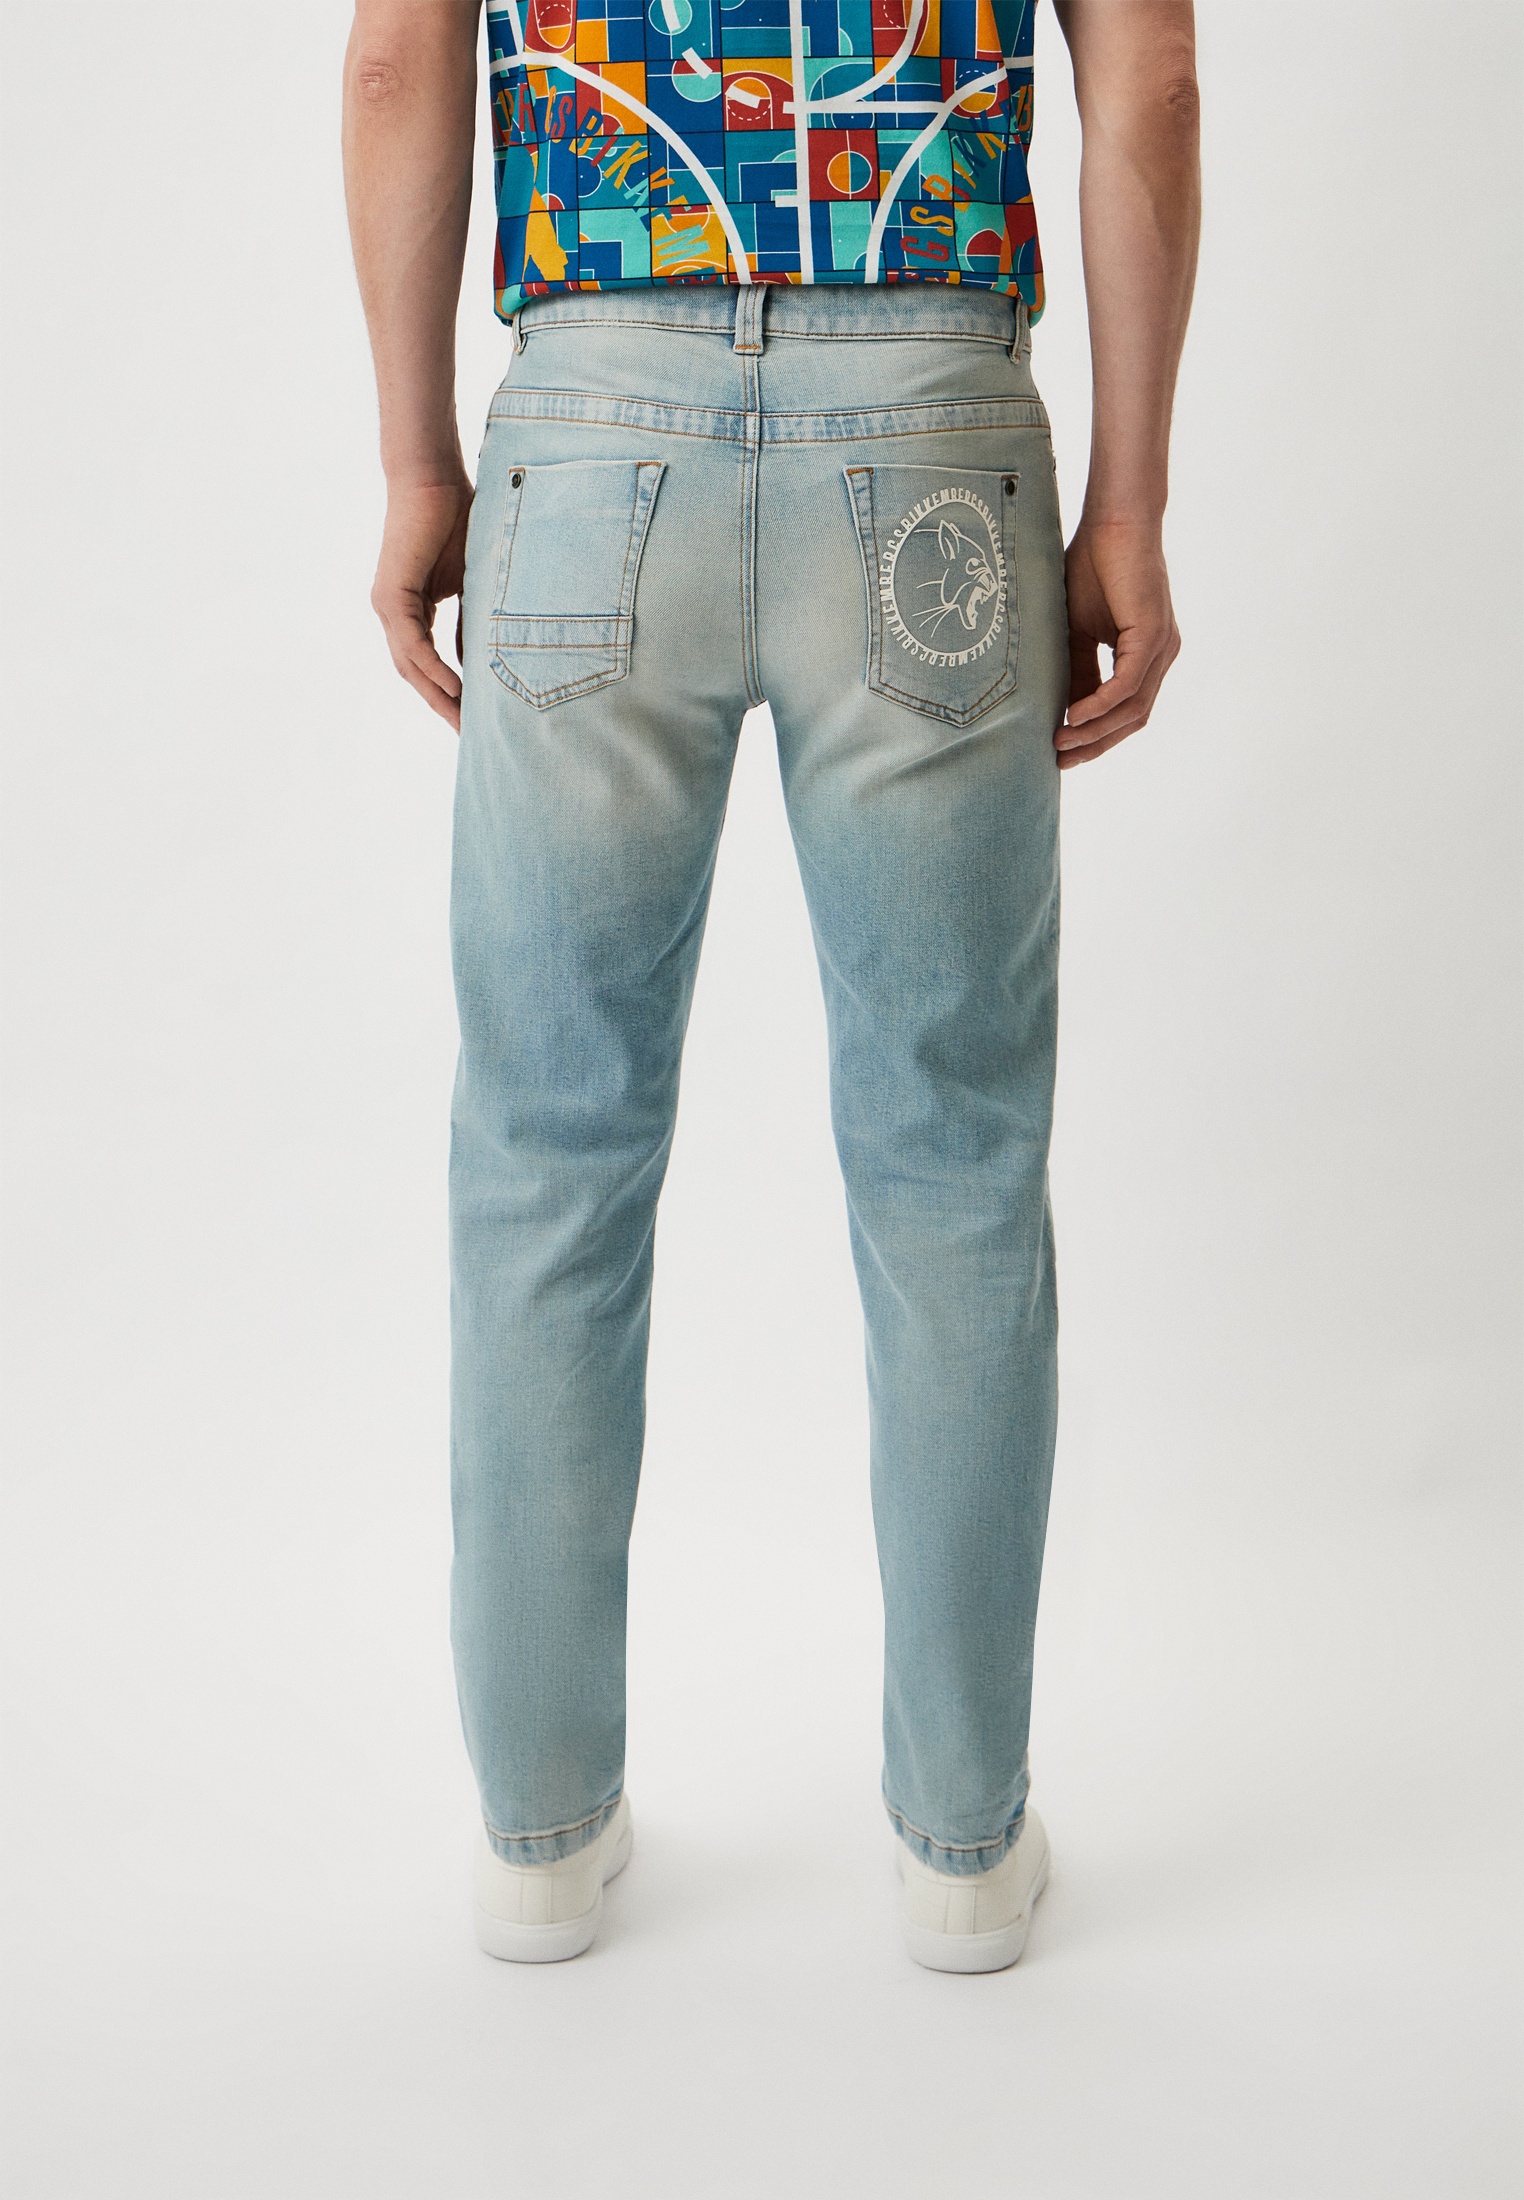 Мужские зауженные джинсы Bikkembergs (Биккембергс) CQ10227S3976: изображение 3